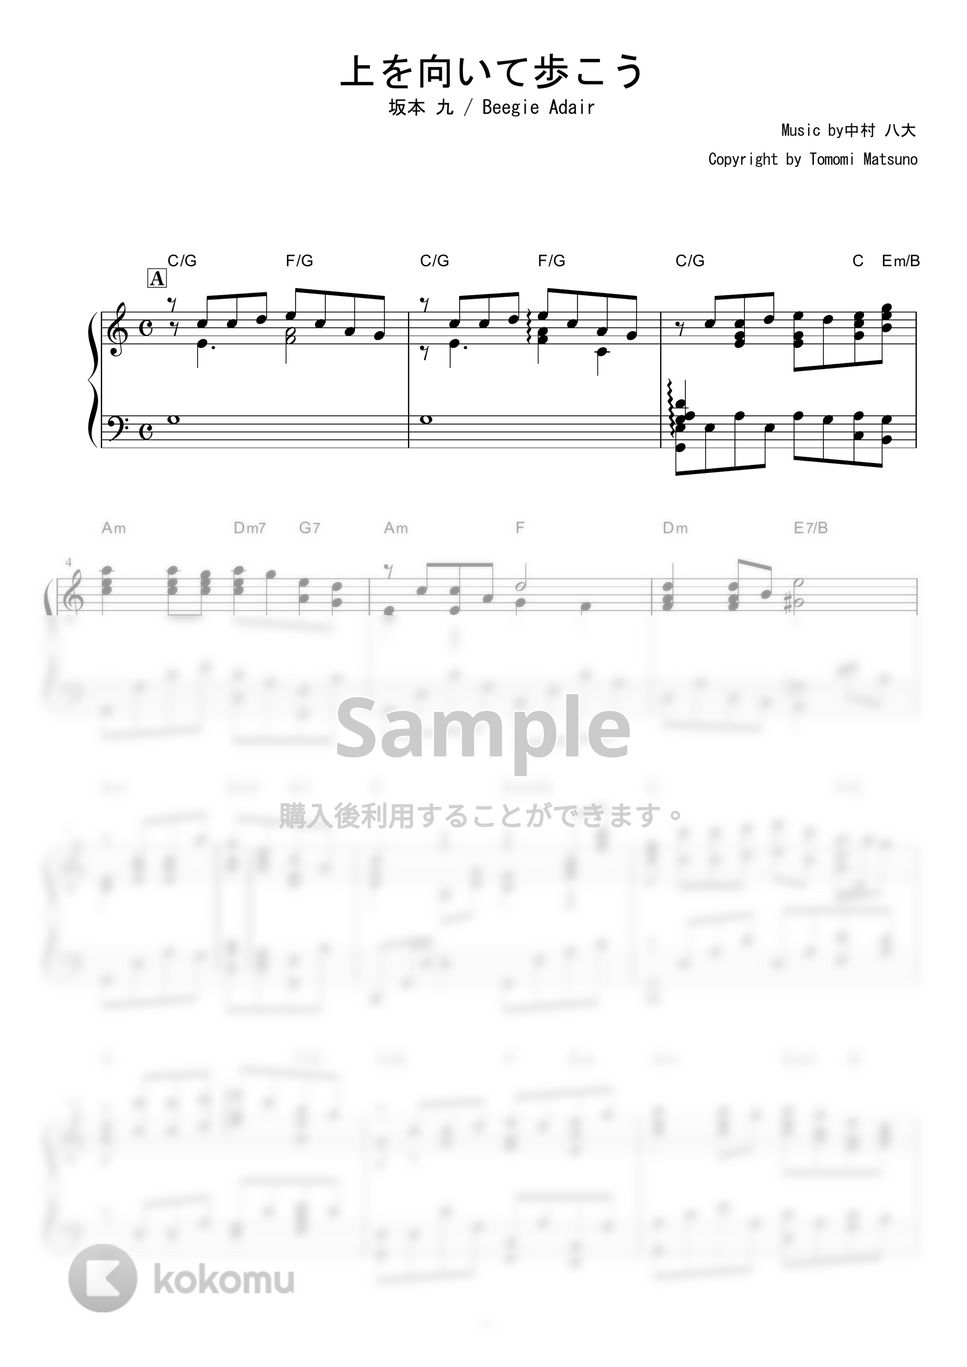 坂本九 - 上を向いて歩こう (Jazz ver.) by piano*score